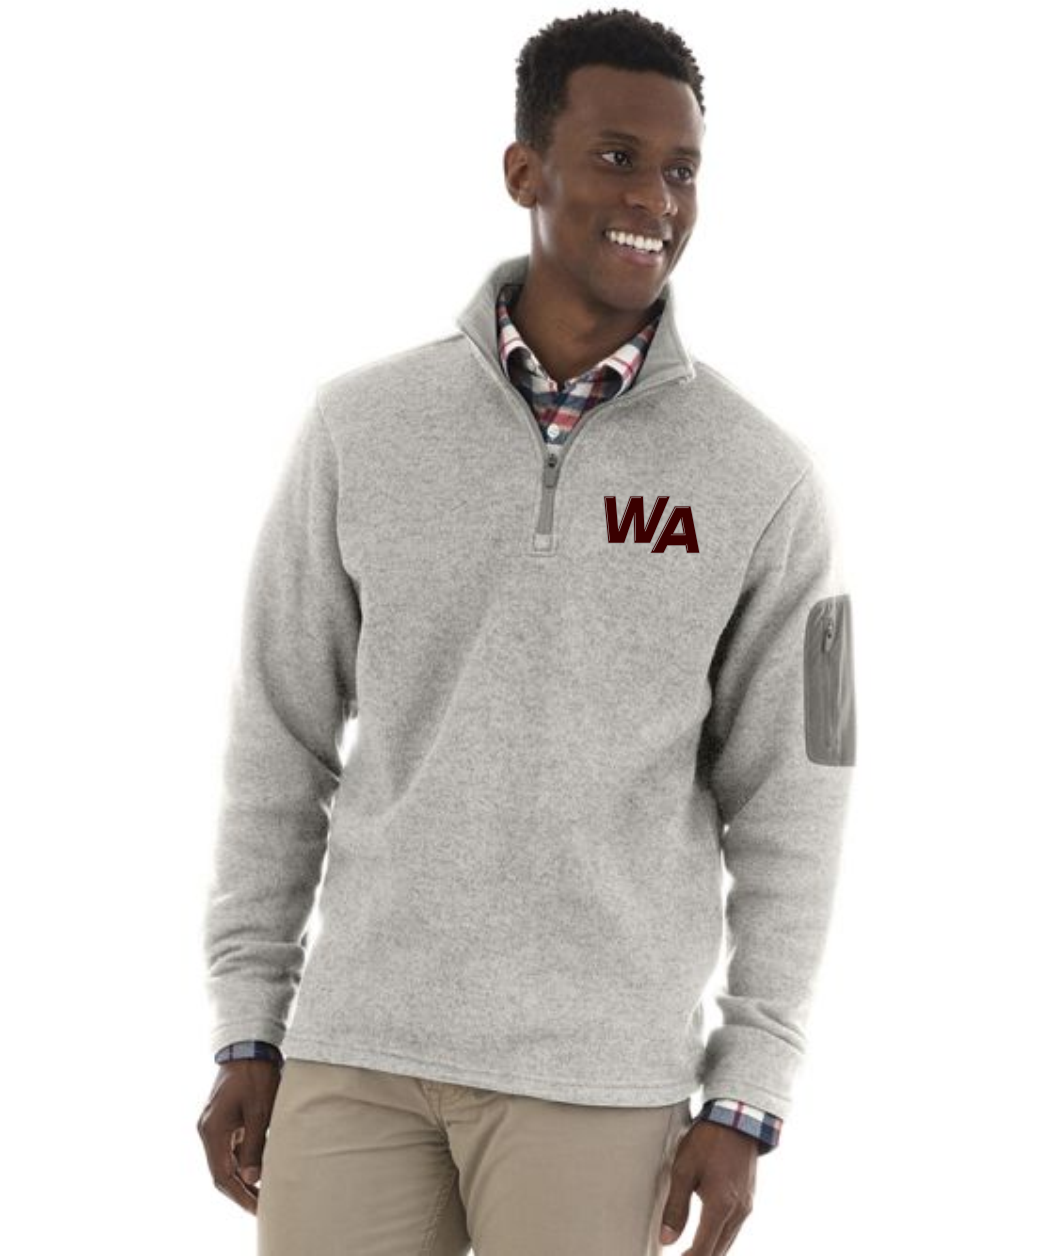 WA Men's Weathered Fleece Pullover 9312